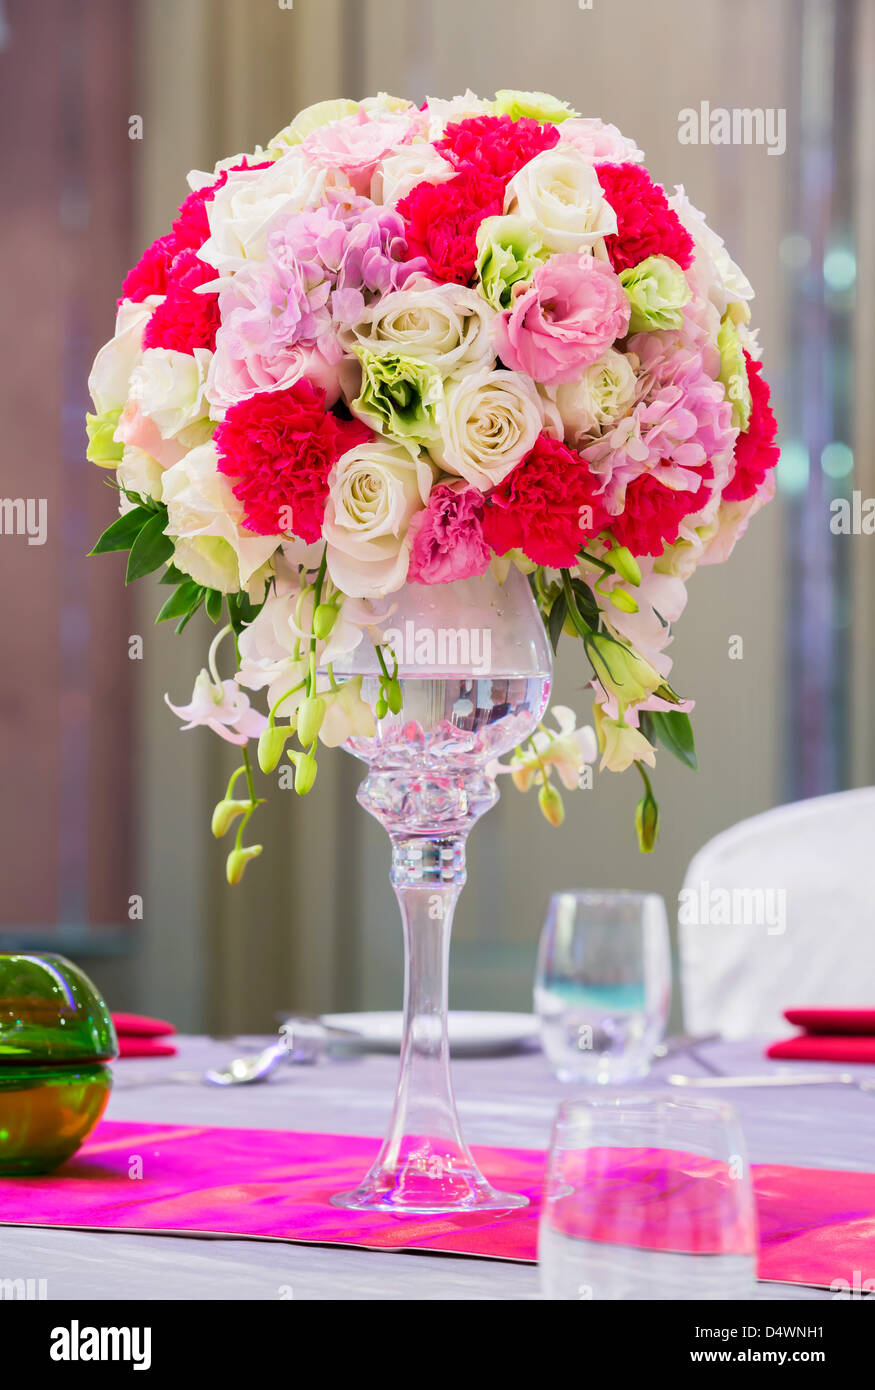 Bouquet de fleurs en vase en verre sur une table à manger Banque D'Images